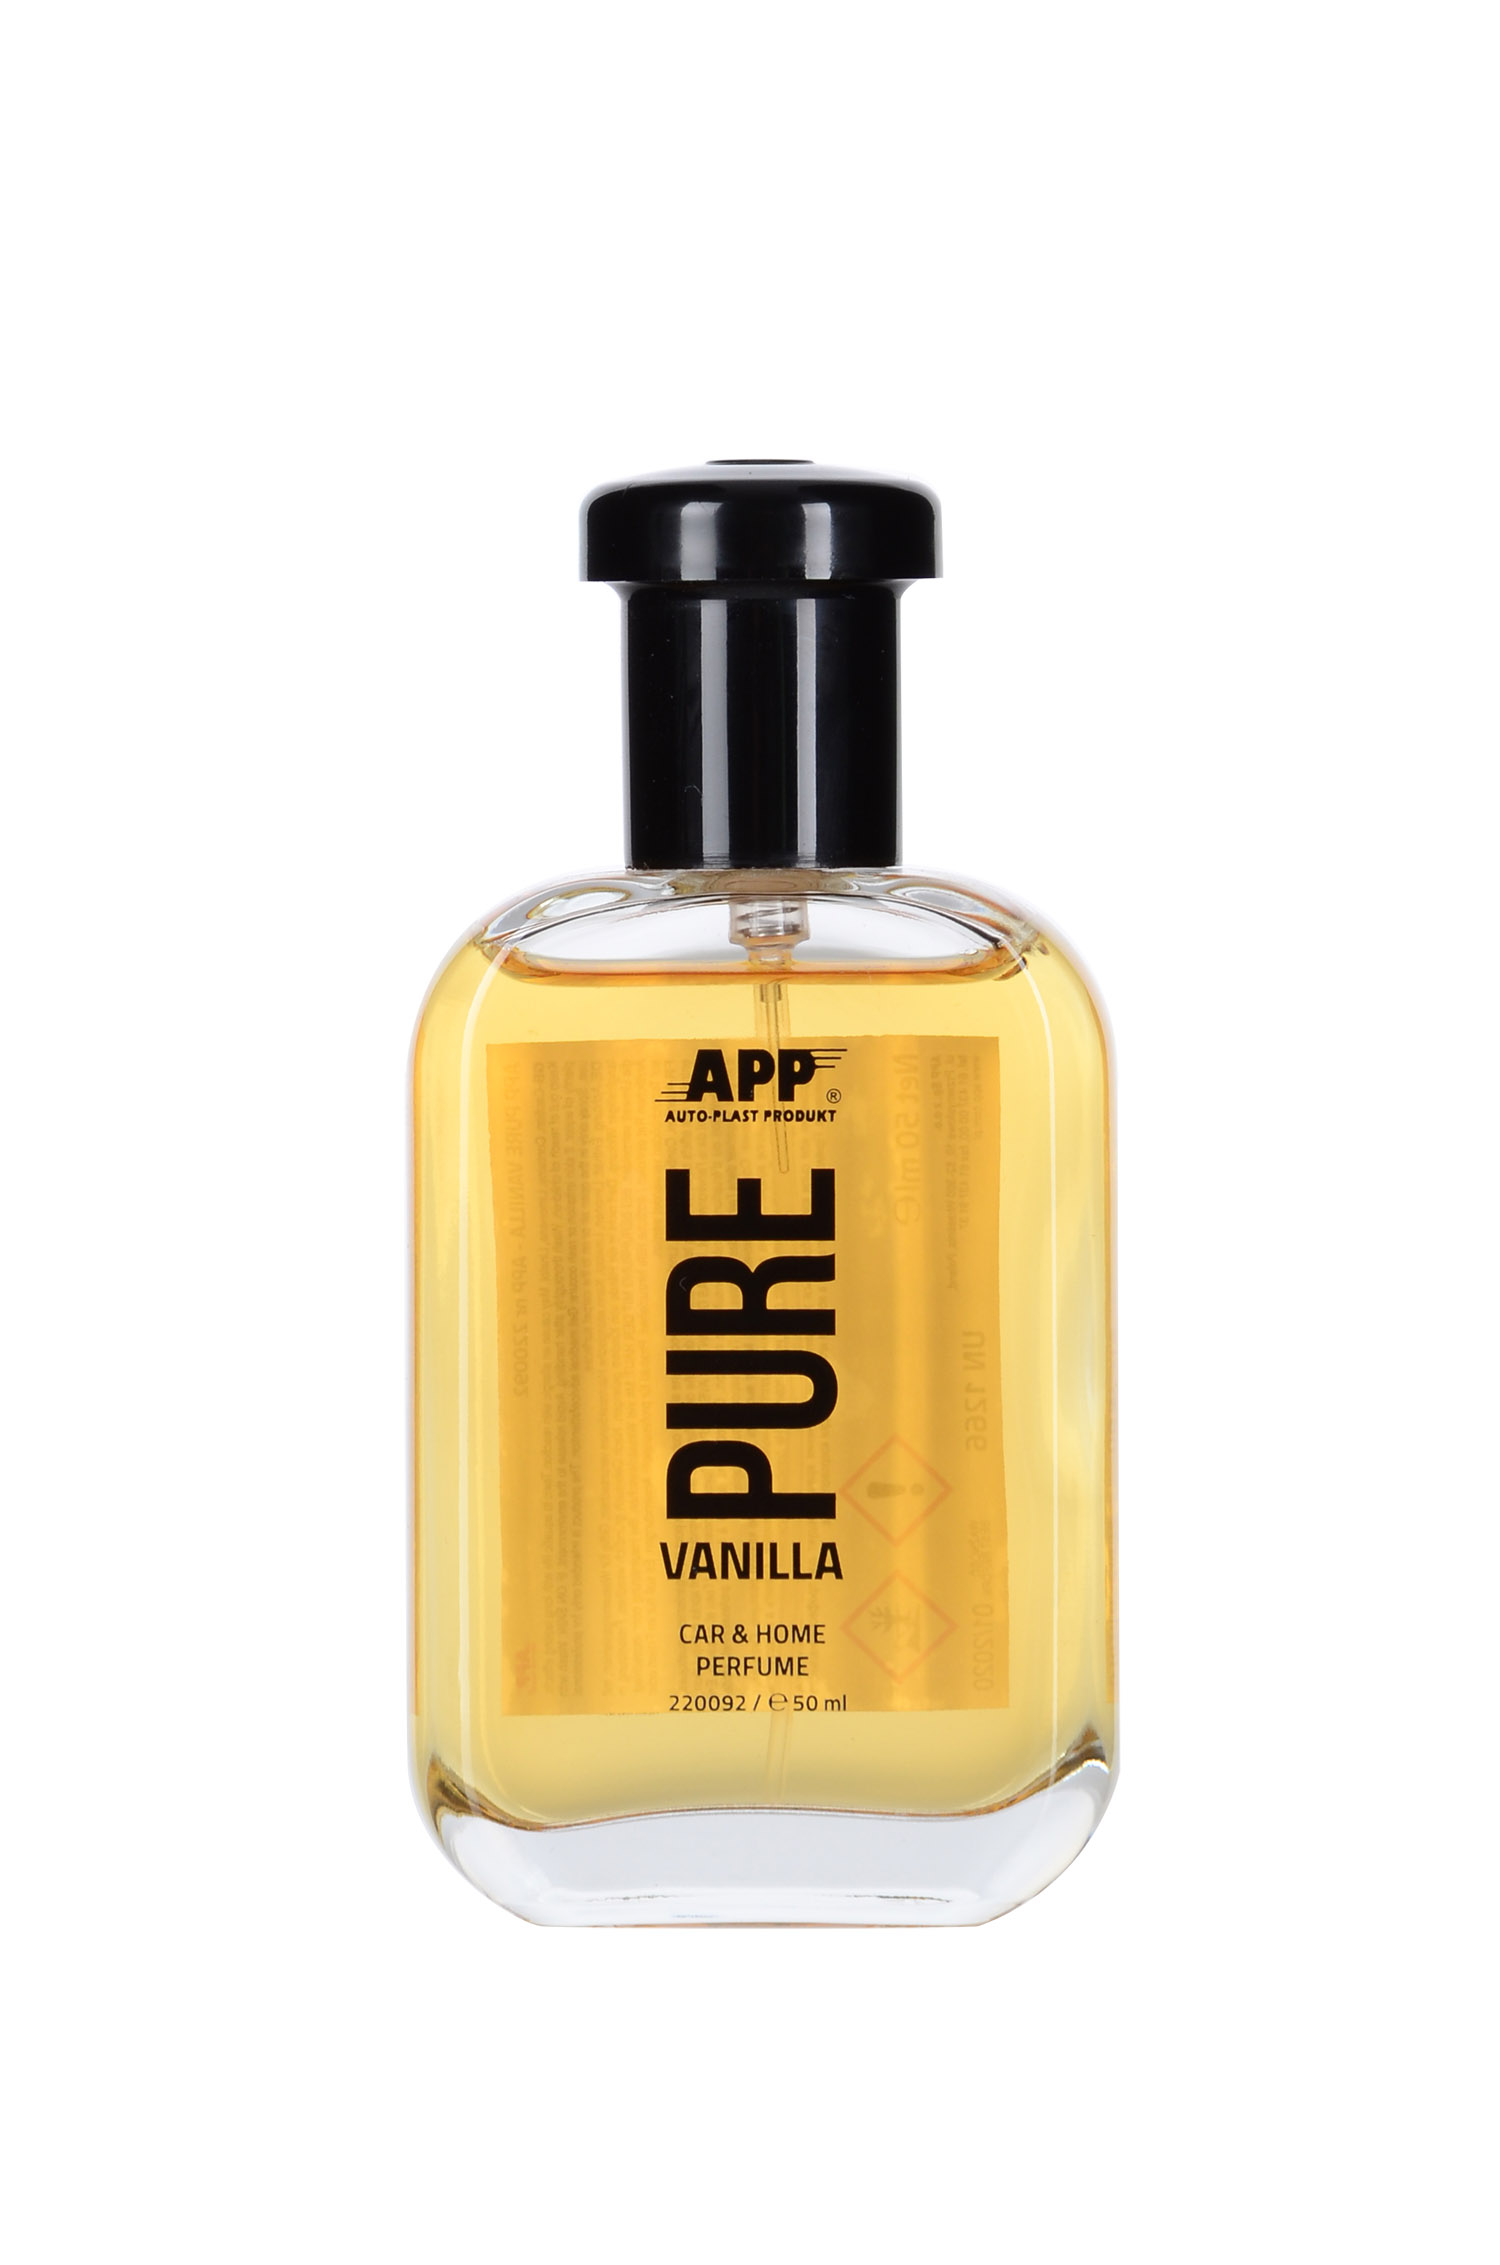 APP 220092 PURE - Lufterfrischer Autoduft Autoparfüm Vanilla 50 ml | Parfüm Duft Sprüher Raumduft